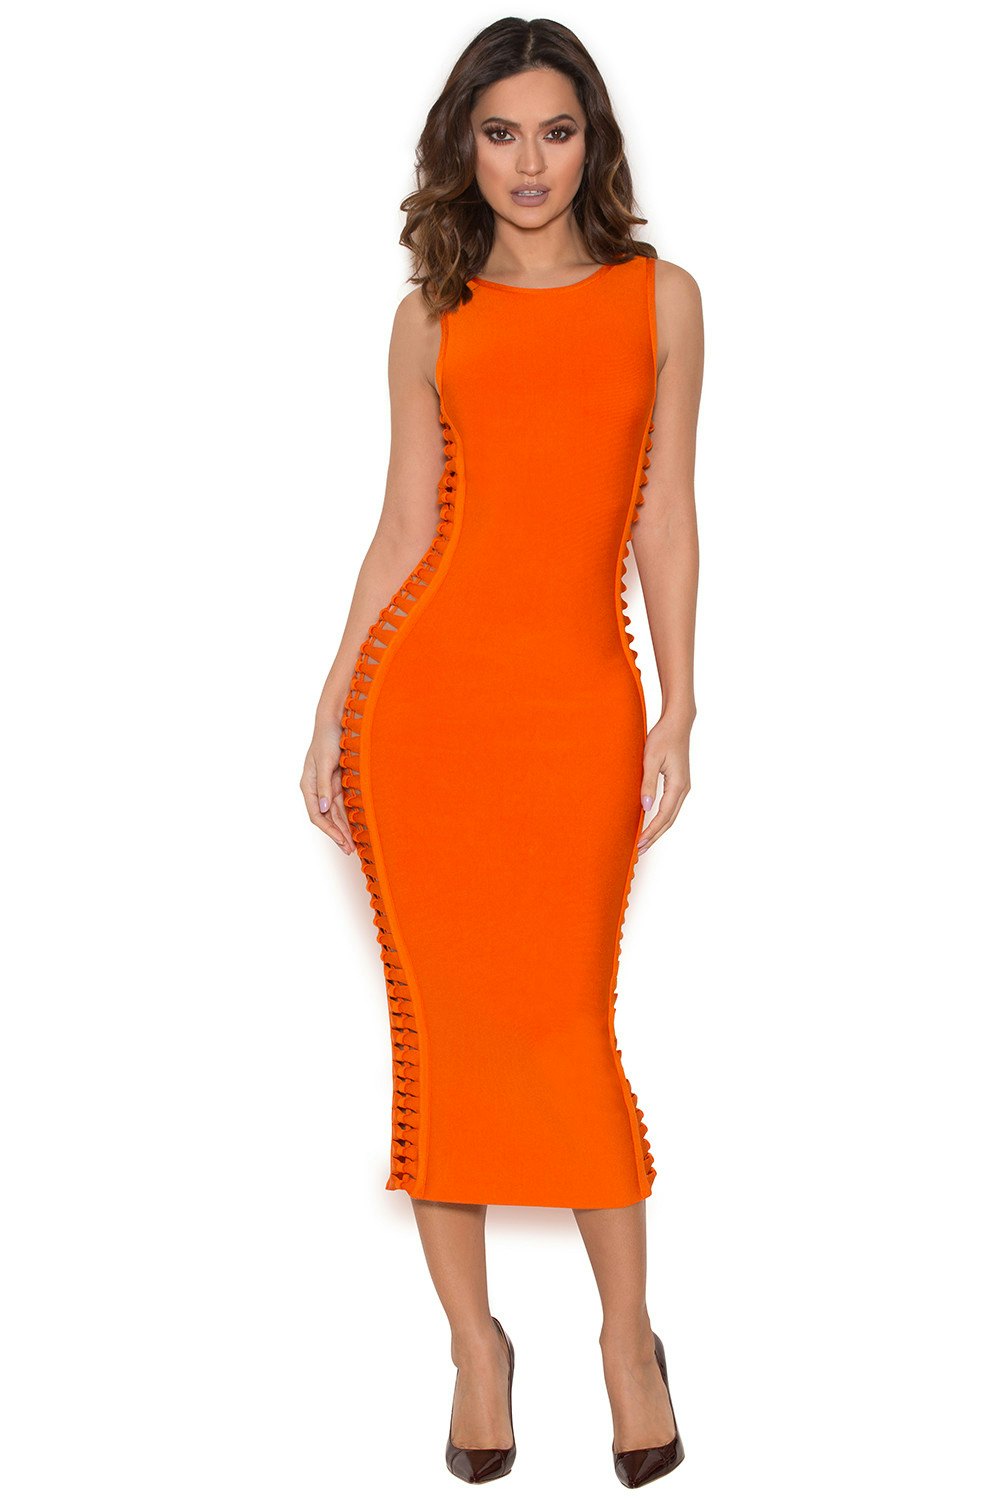 khloe kardashian orange bandage dress